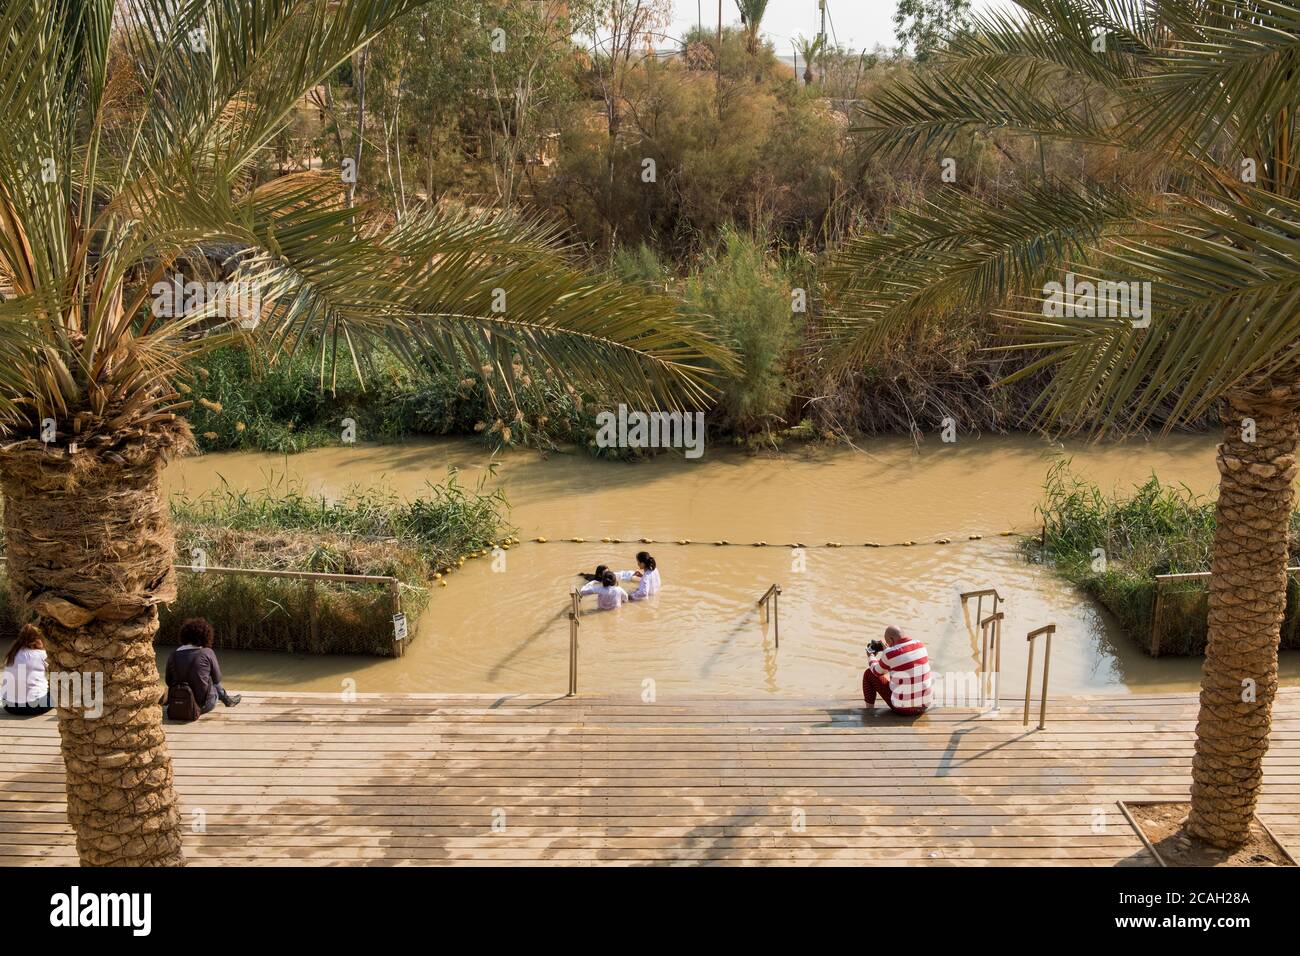 Sito battesimale Qasr el Yahud sul fiume Giordano, il luogo dove Gesù Cristo viene battezzato, Gerico Governatorato, Cisgiordania, Palestina Foto Stock